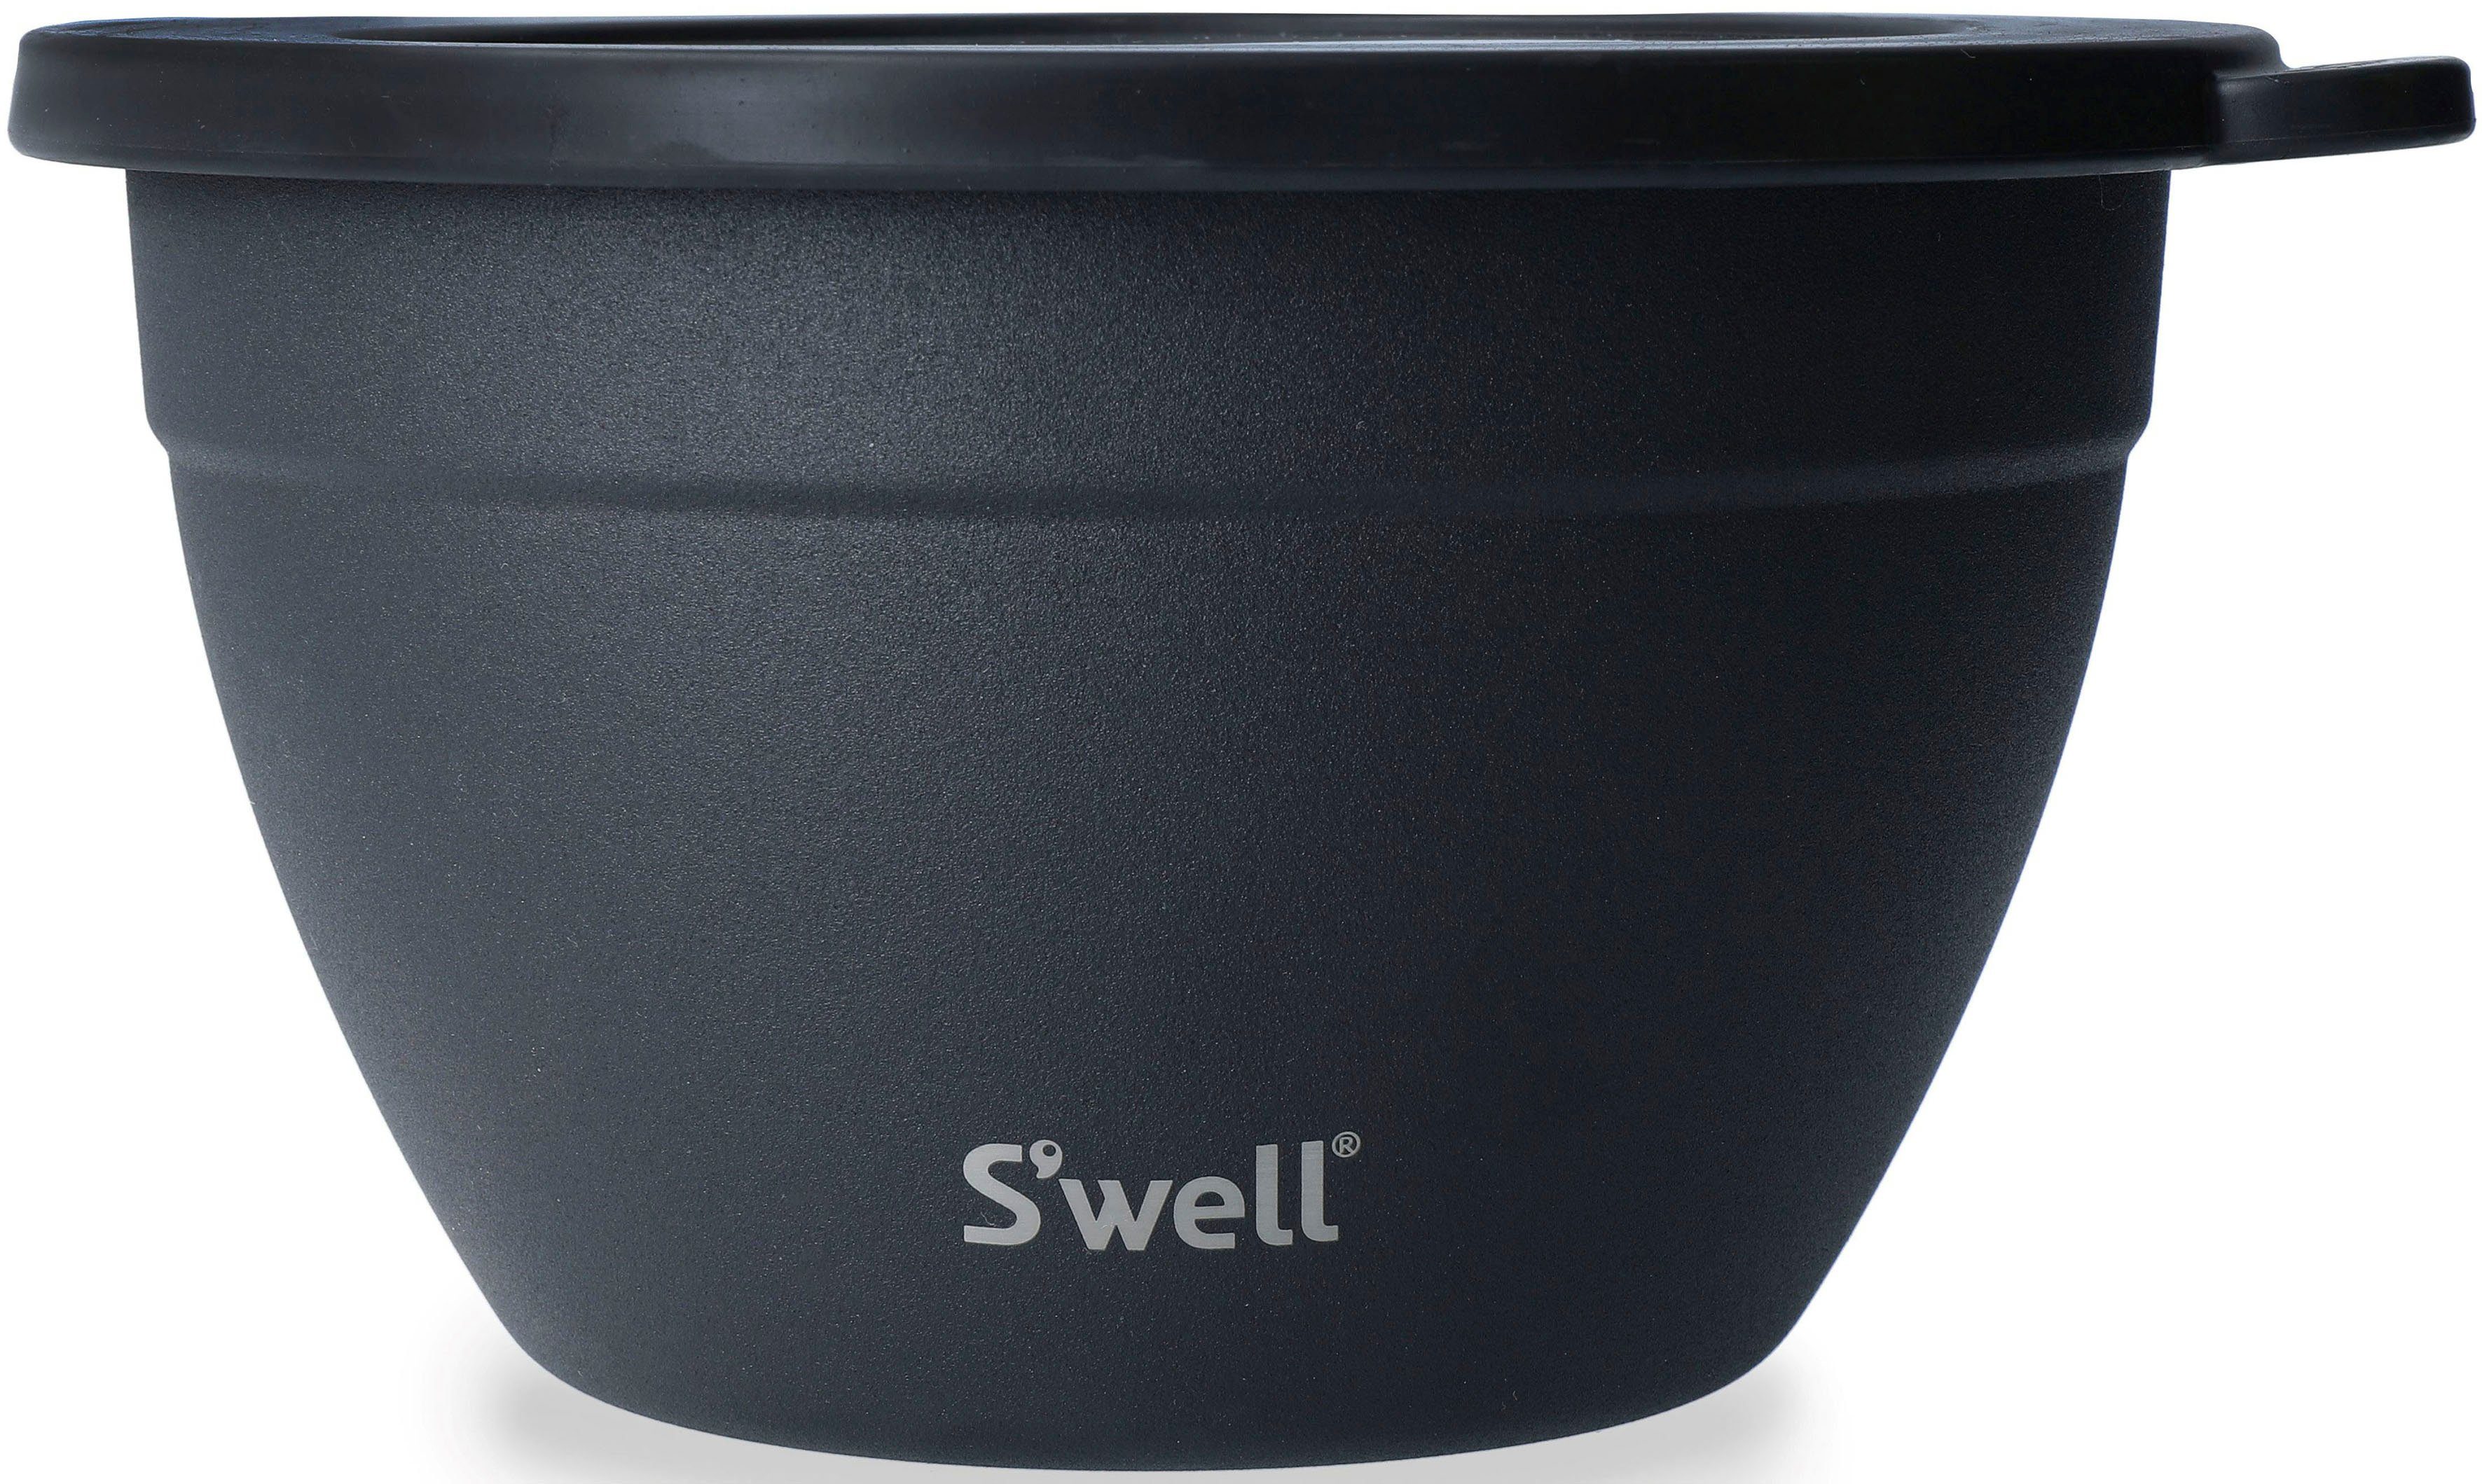 S'well Salatschüssel S'well Onyx Bowl vakuumisolierten Salad (3-tlg), Edelstahl, Kit, Therma-S'well®-Technologie, Schwarz 1.9L, Außenschale